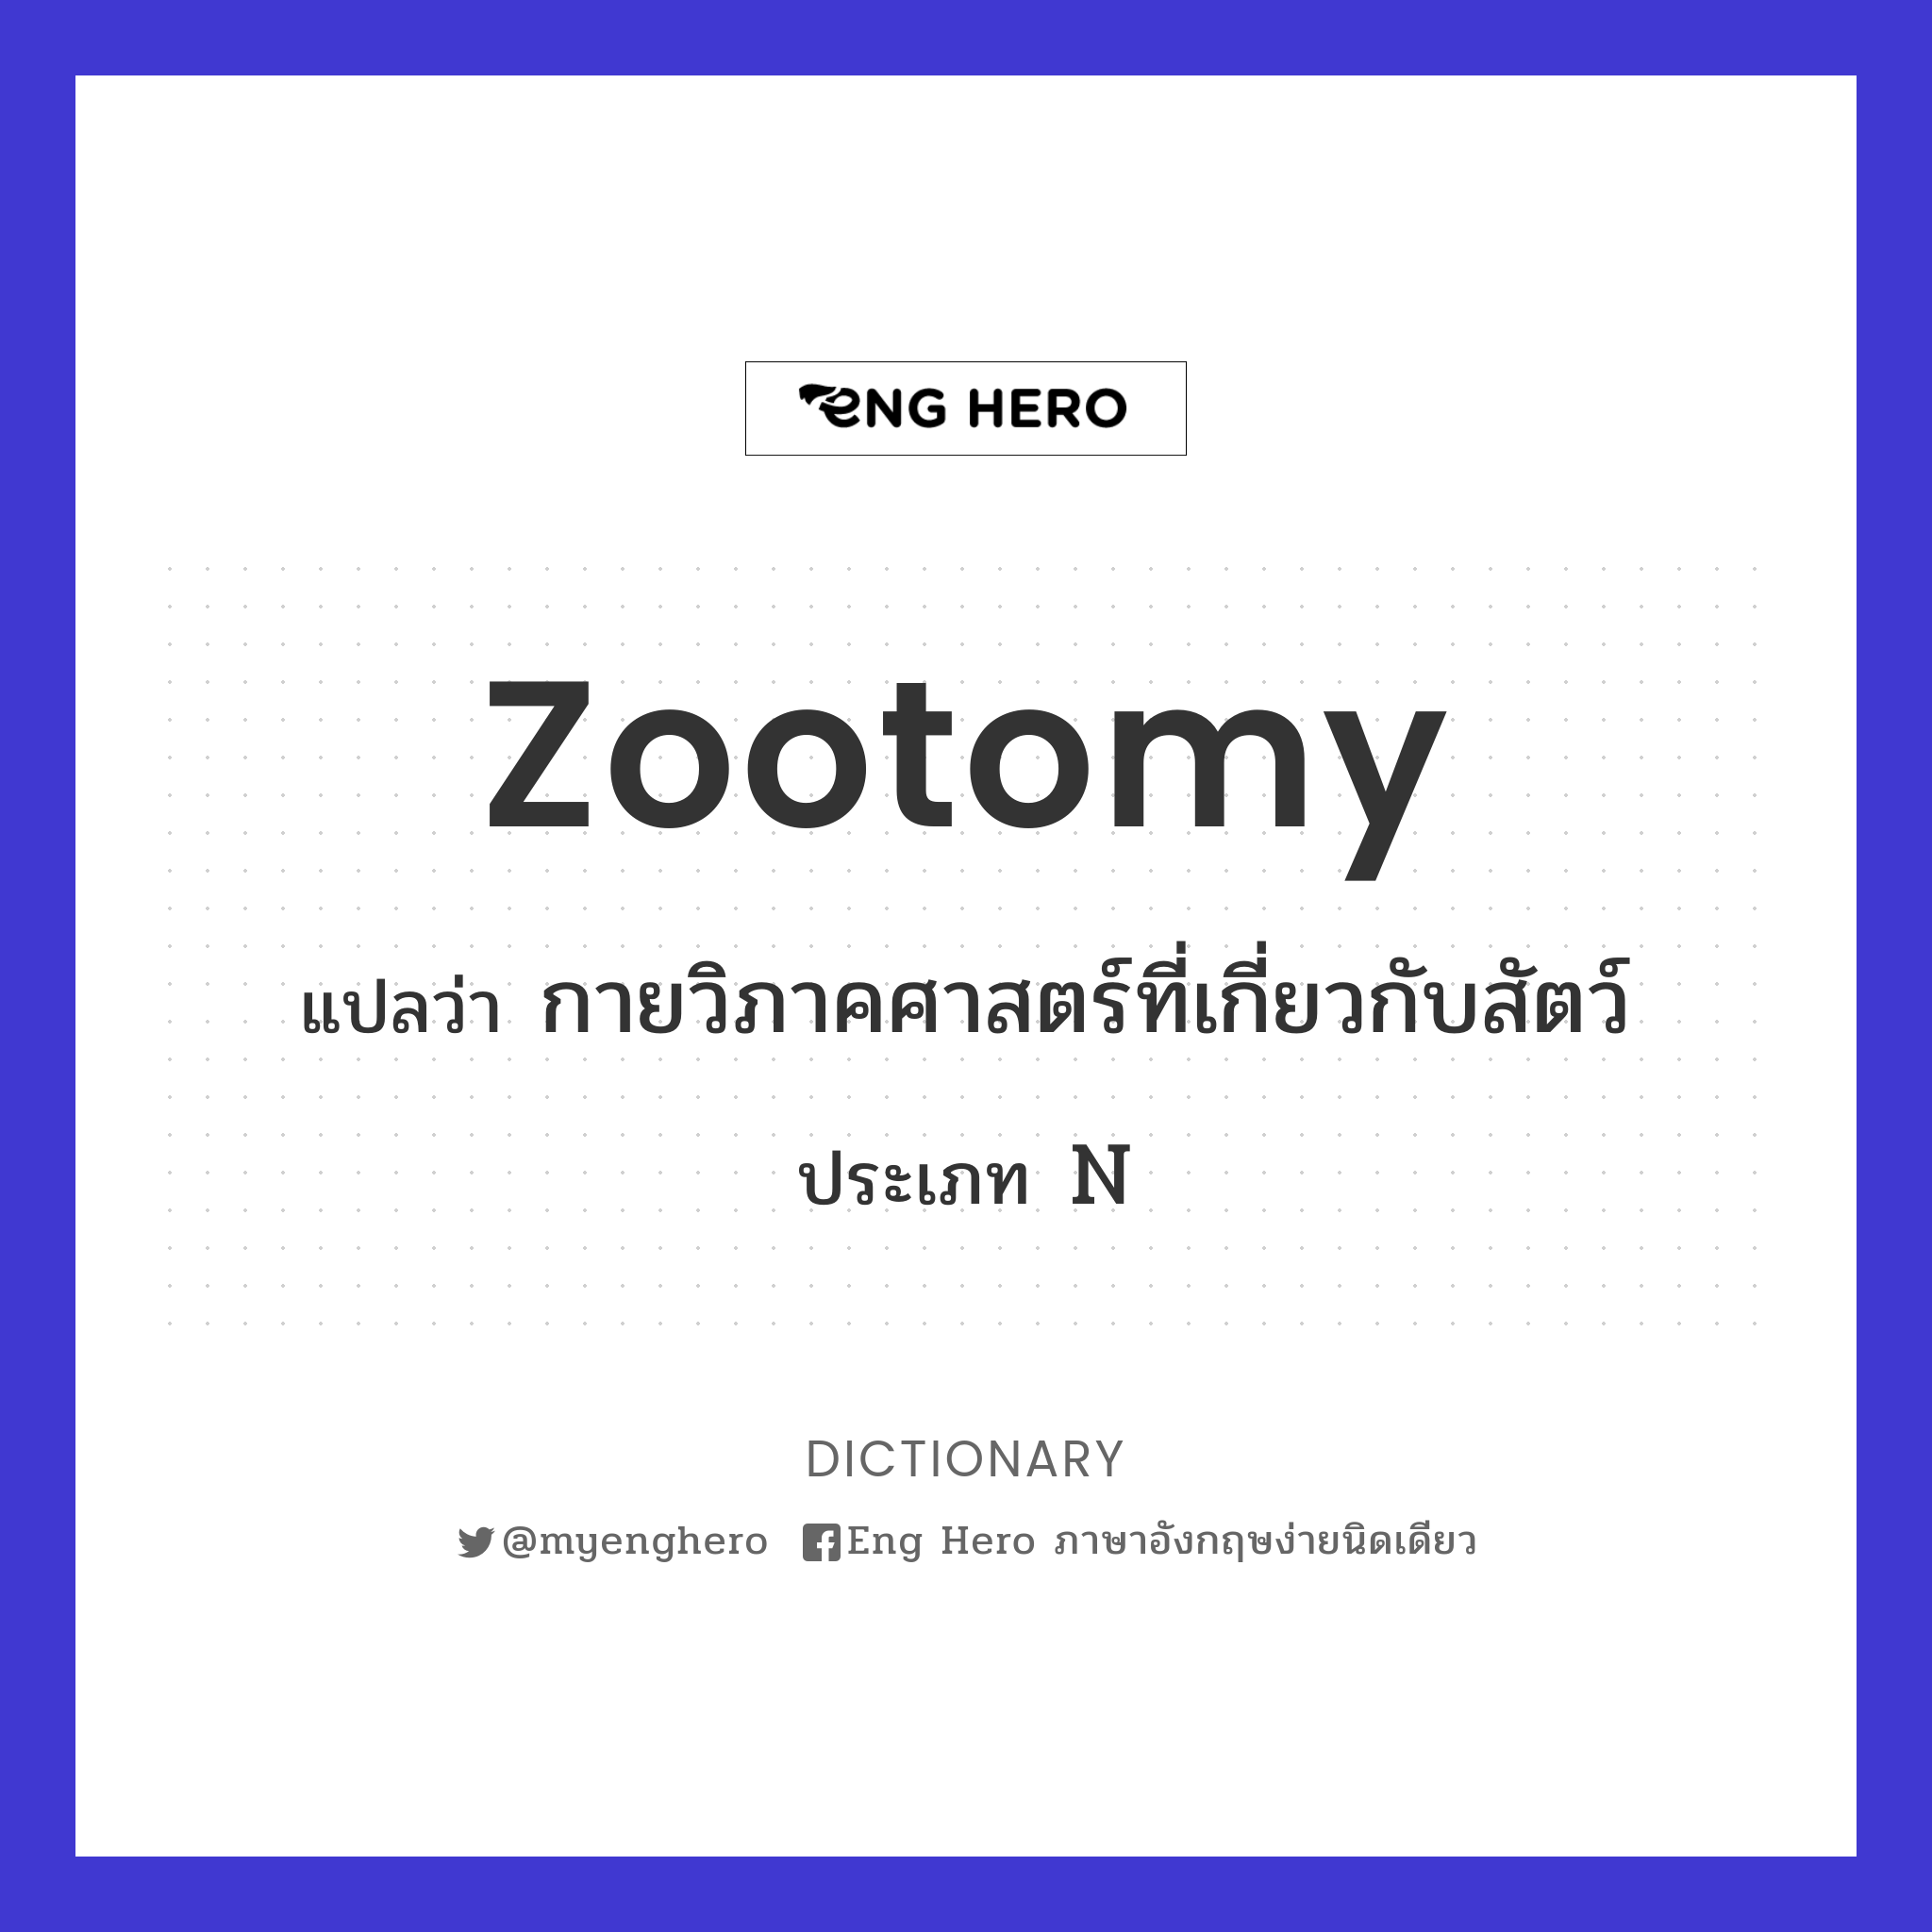 zootomy